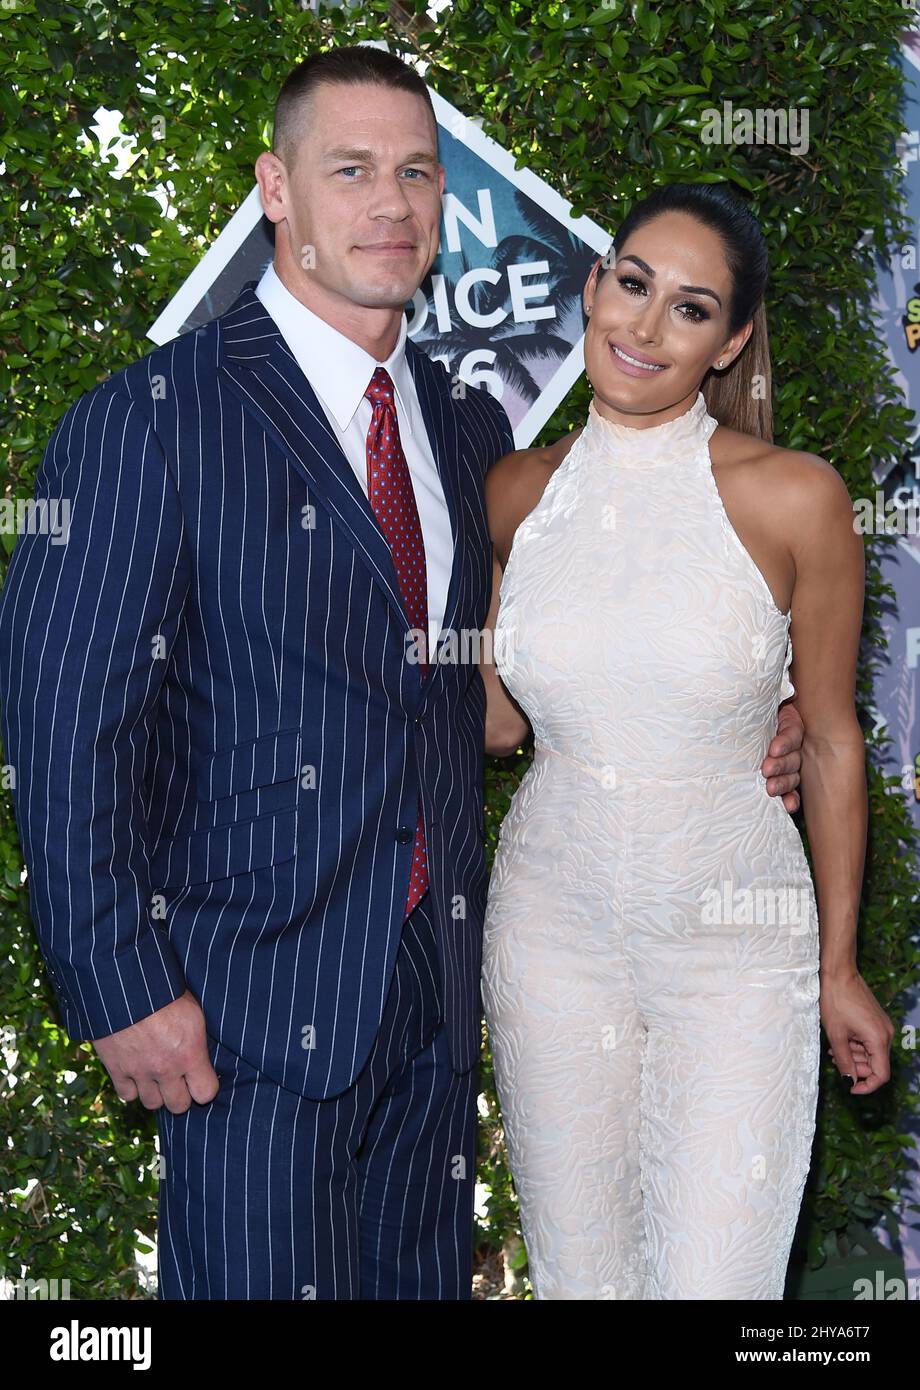 John Cena et Nikki Bella arrivent aux prix Teen Choice Awards 2016 qui se tiennent au Forum Banque D'Images